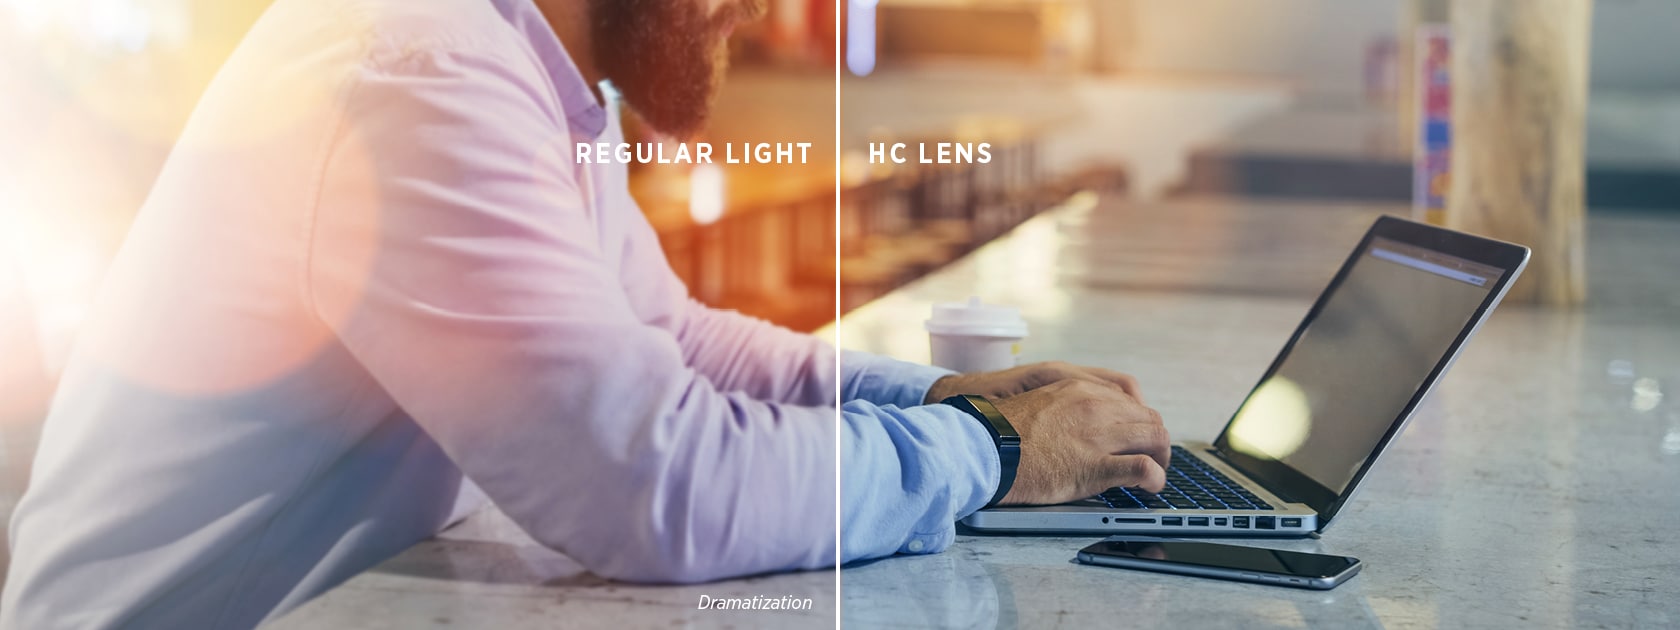 immagine divisa di un uomo che digita su un laptop che mette in risalto la differenza della luce normale applicata ad una lente HC